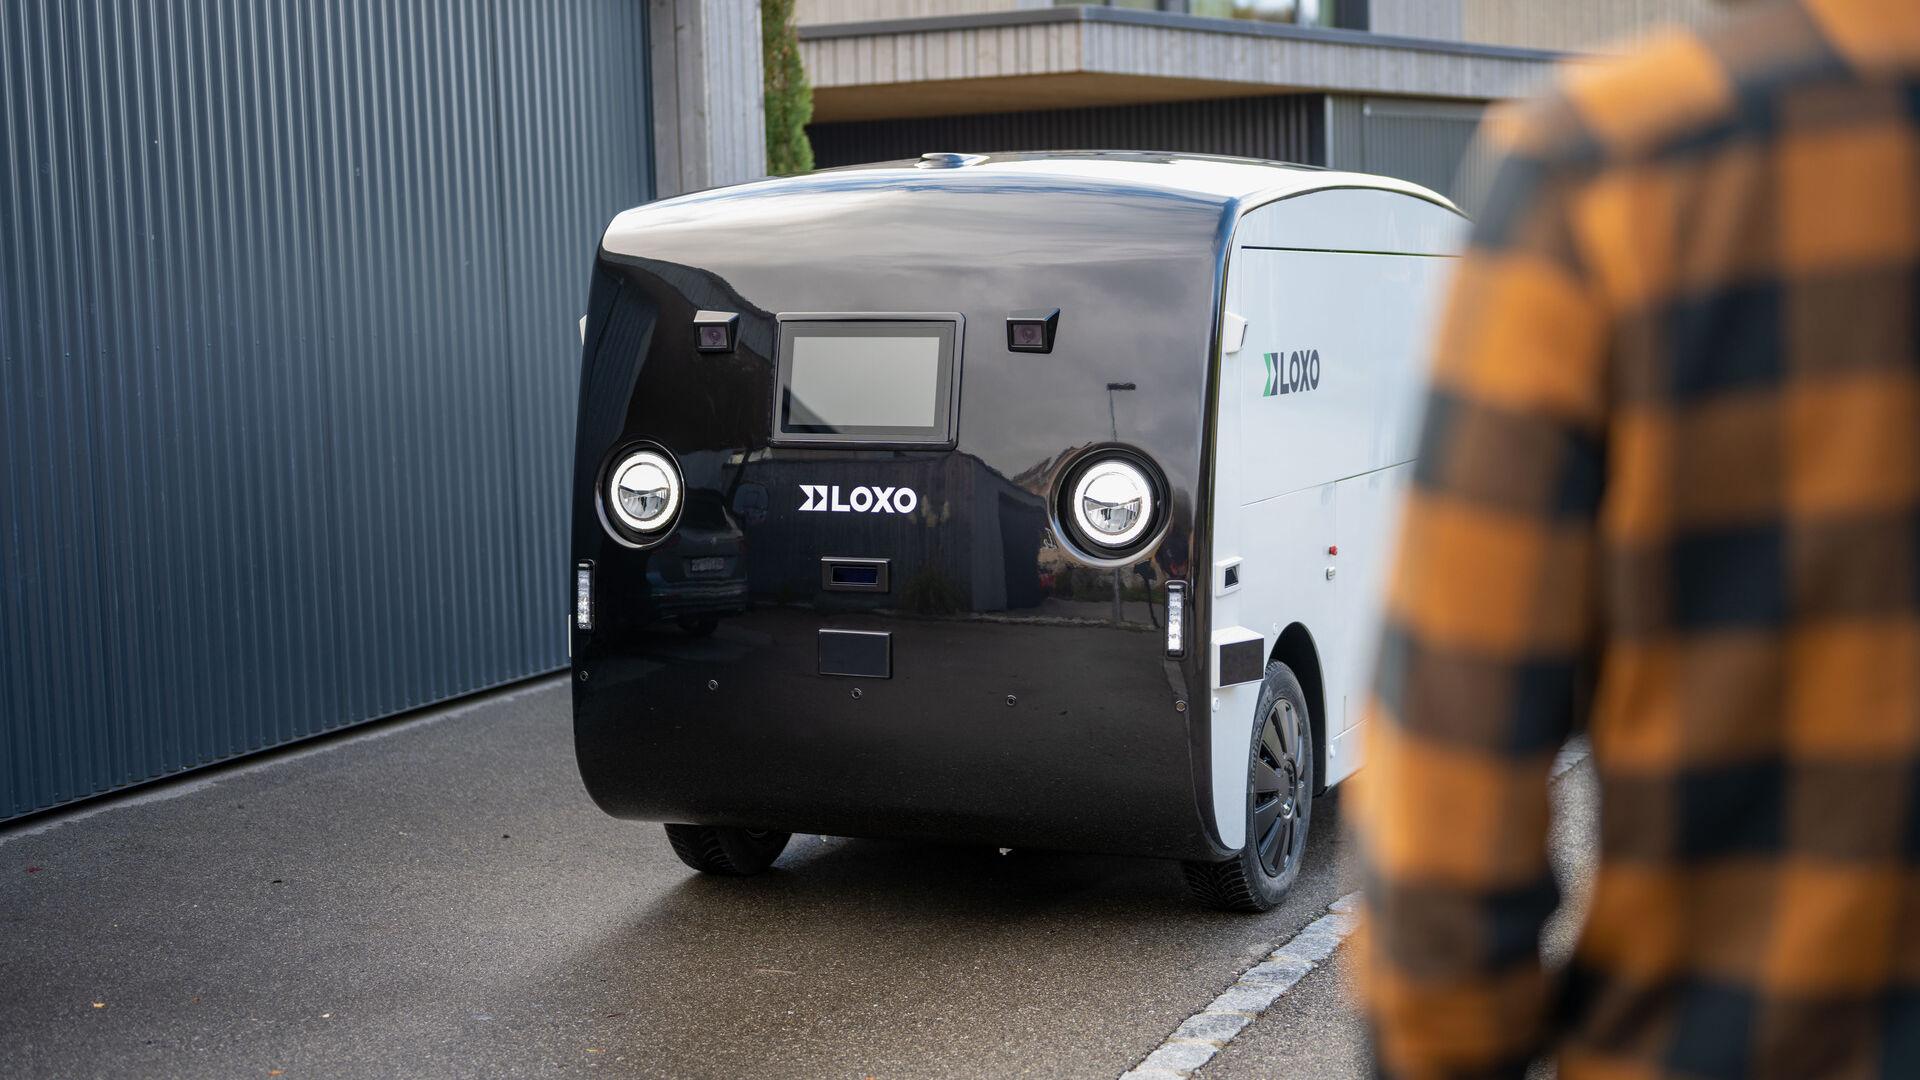 LOXO: Alpha เป็นรถตู้ไร้คนขับที่ผลิตในสวิตเซอร์แลนด์ทั้งหมด และนำเสนอในวันที่ 6 ธันวาคม 2022 ที่ Kursaal ใน Bern ในระหว่างการแถลงข่าวโดย LOXO สตาร์ทอัพ